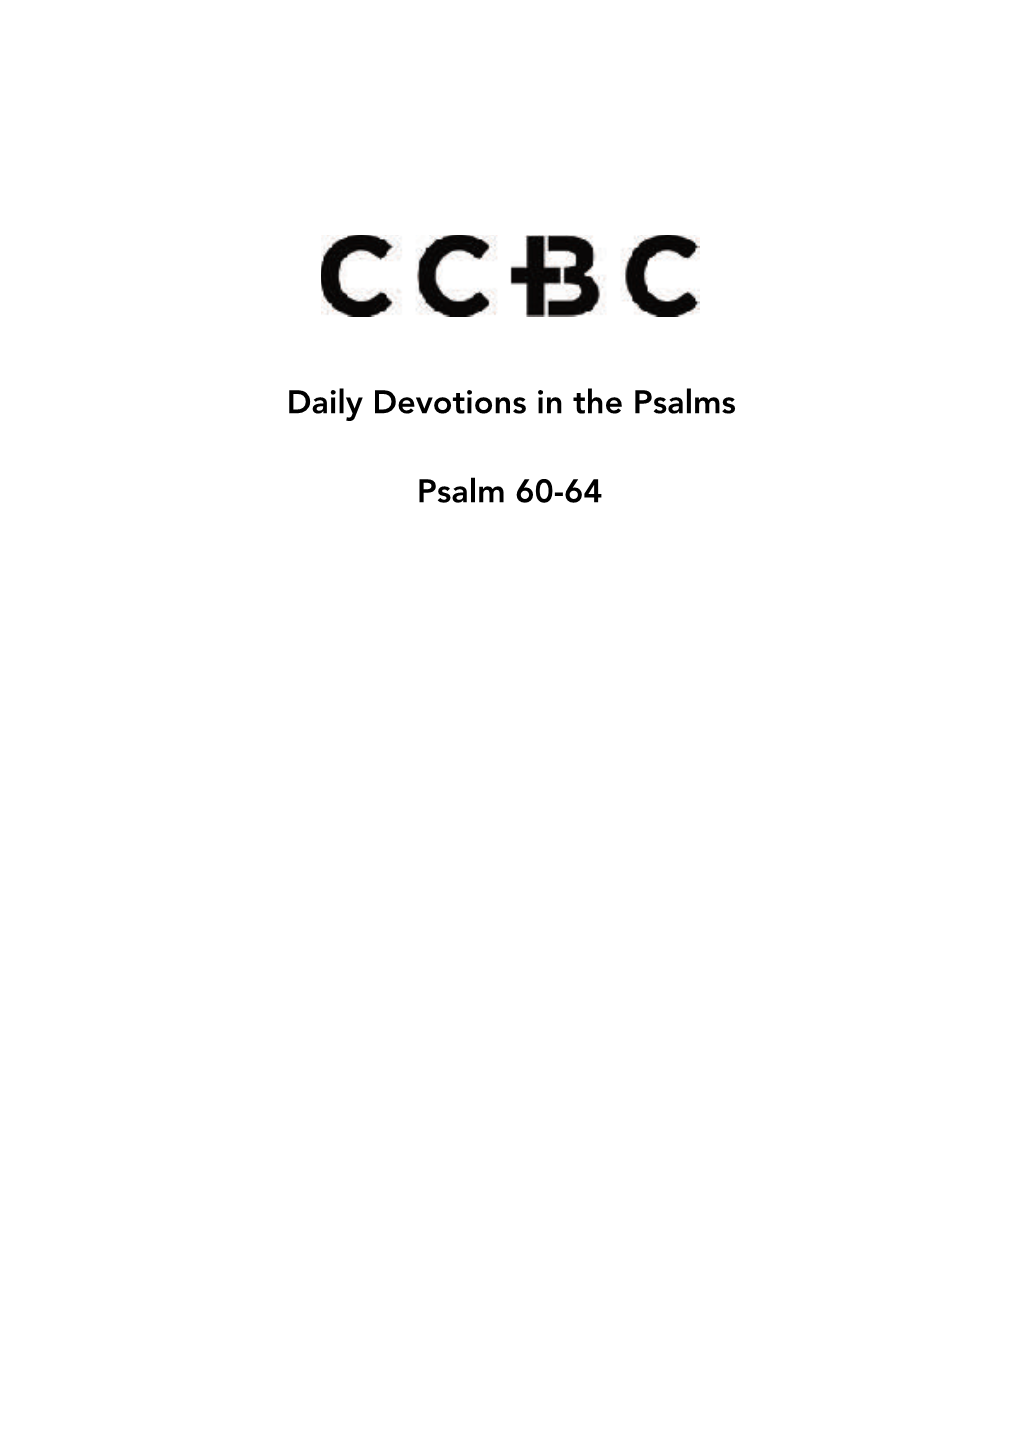 Psalm 60-64 Monday 22Nd June - Psalm 60